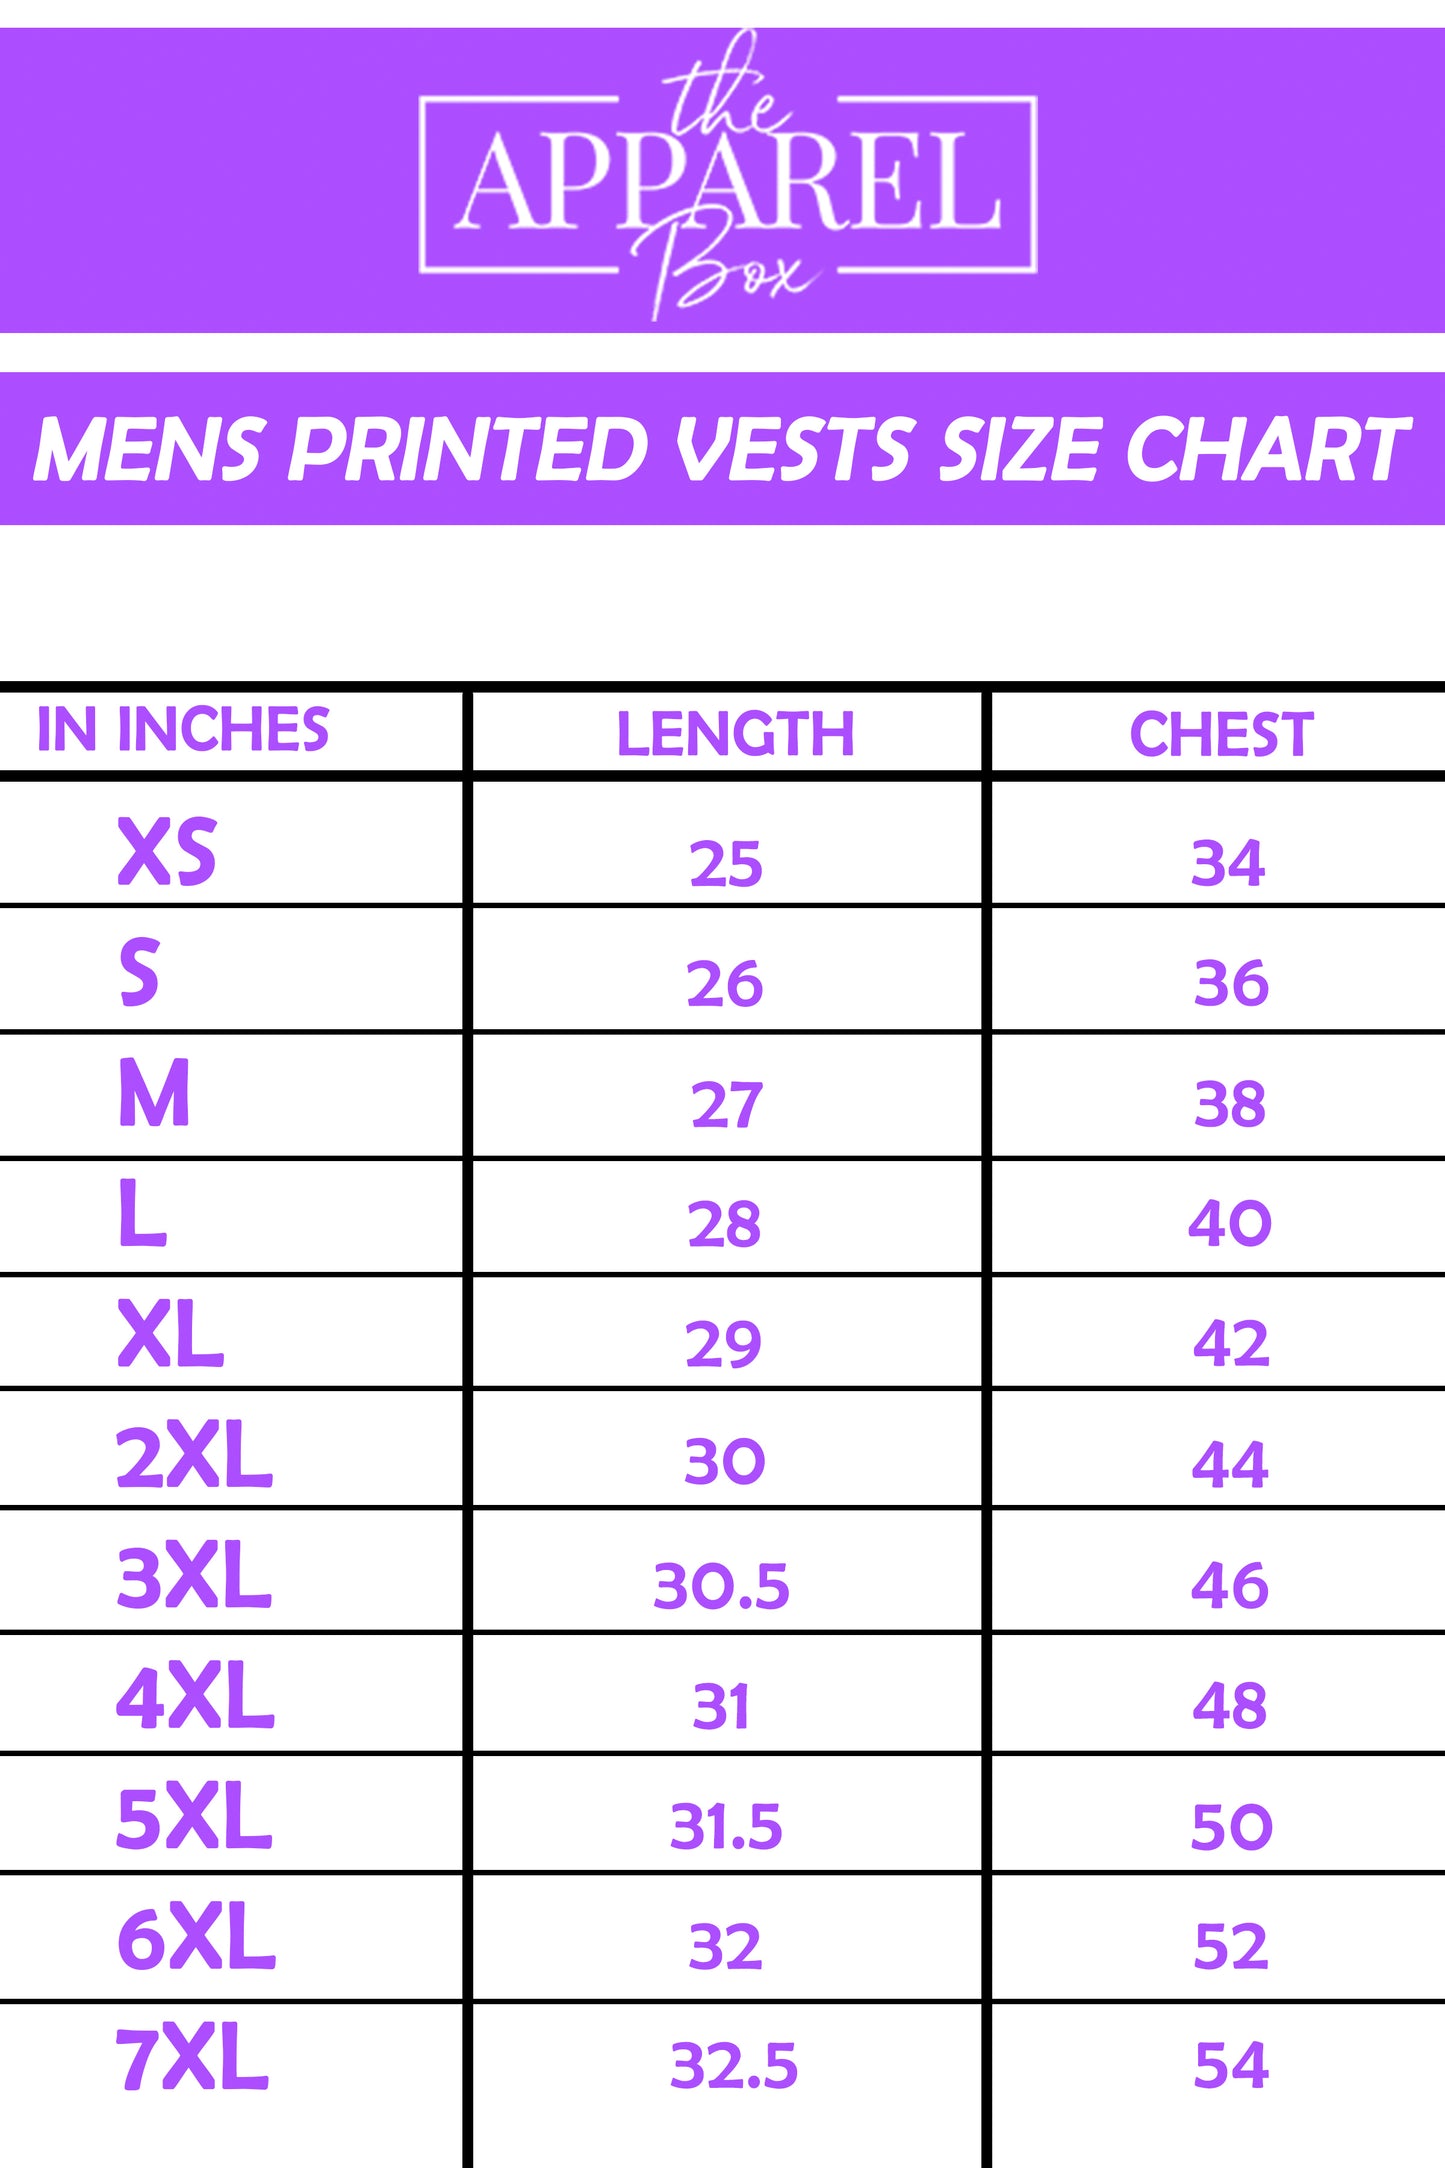 Printed Vest#14